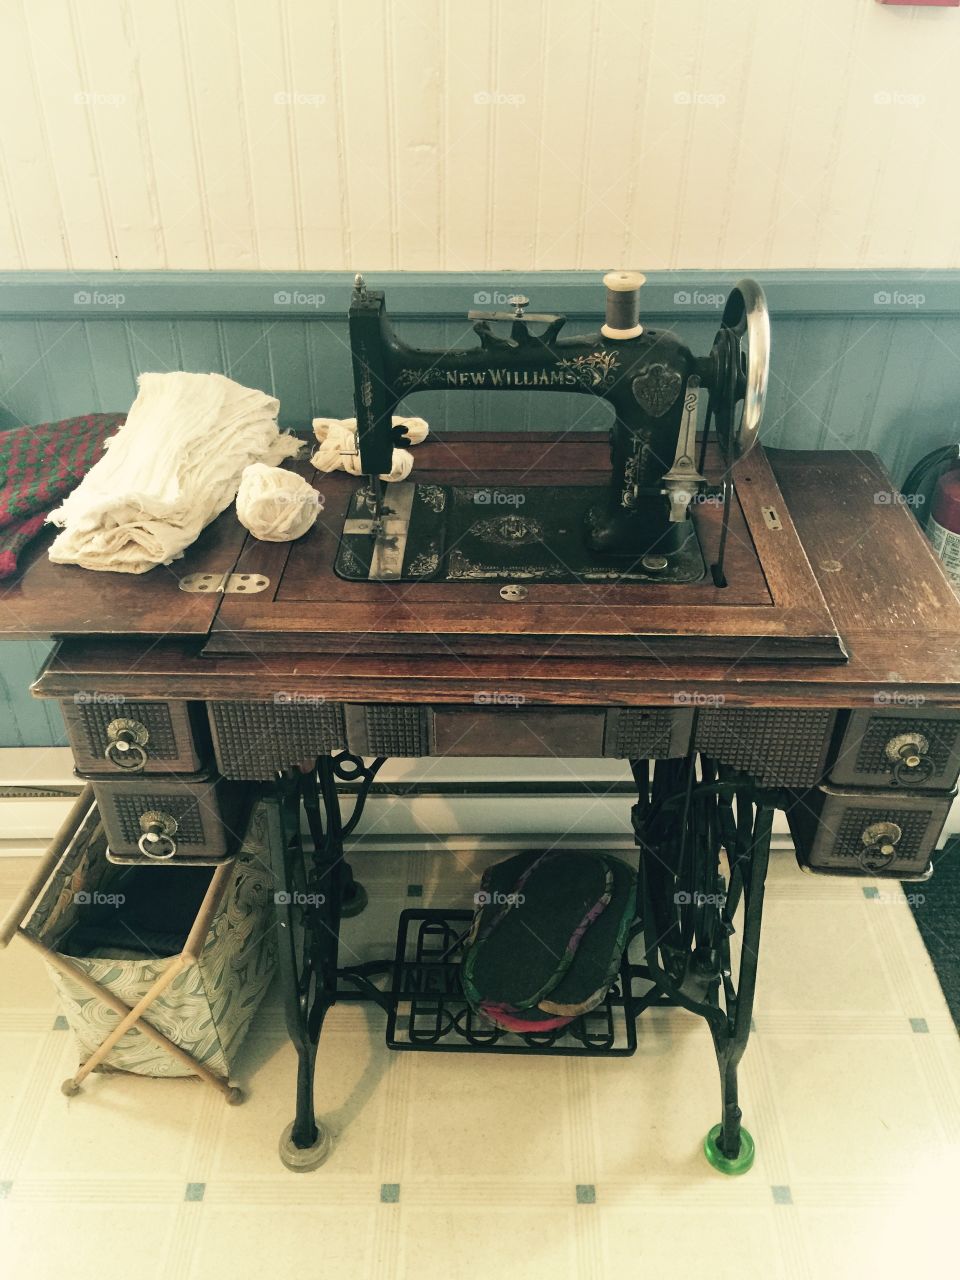 Typewriter, Furniture, Table, Wood, Machine